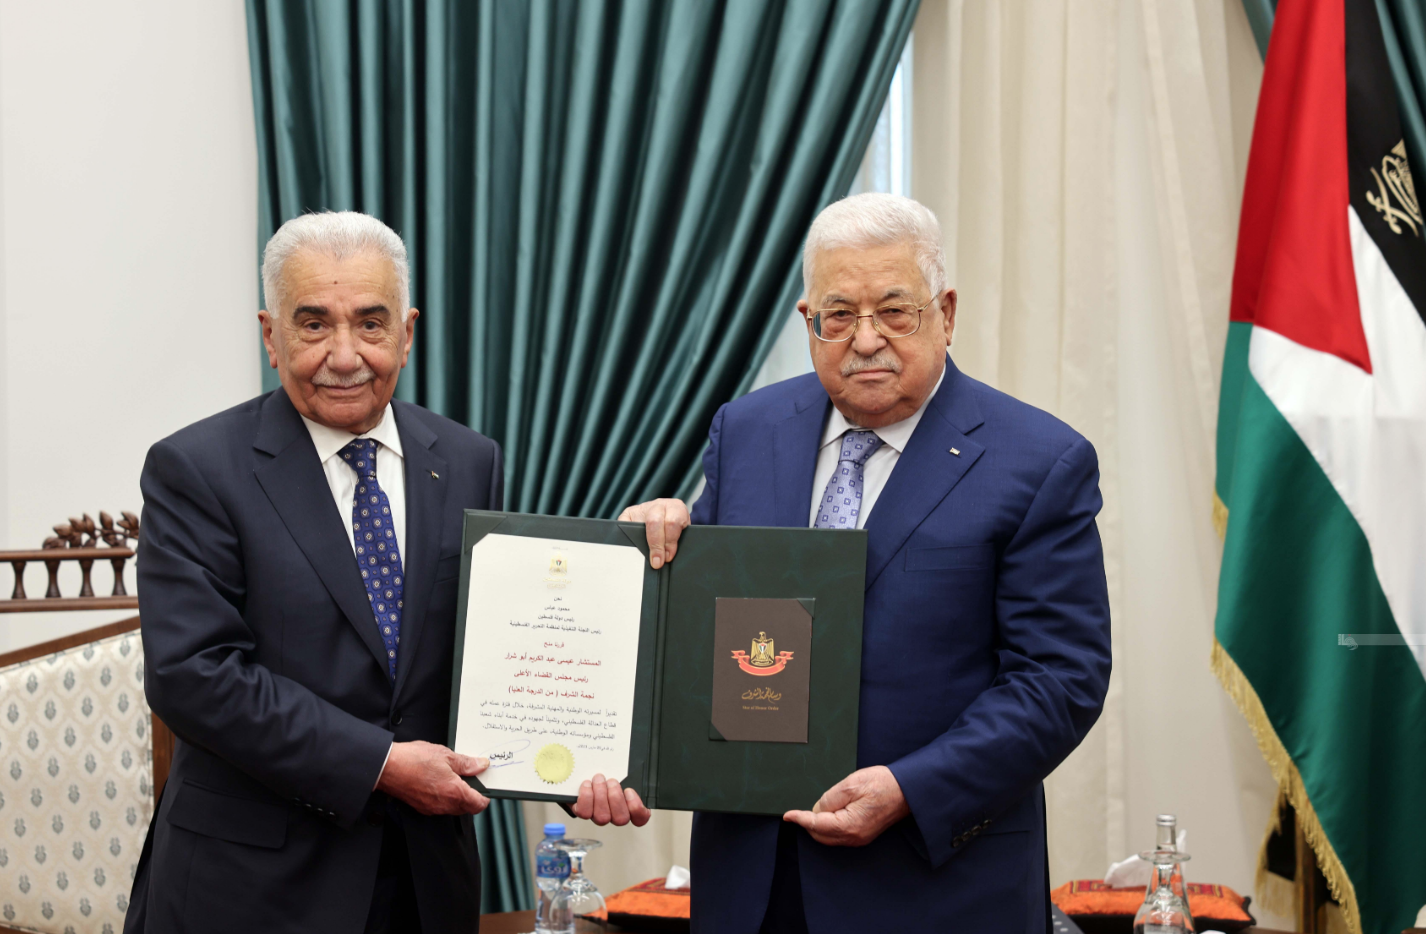  الرئيس محمود عباس قلّد المستشار عيسى أبو شرار نجمة الشرف من الدرجة العليا